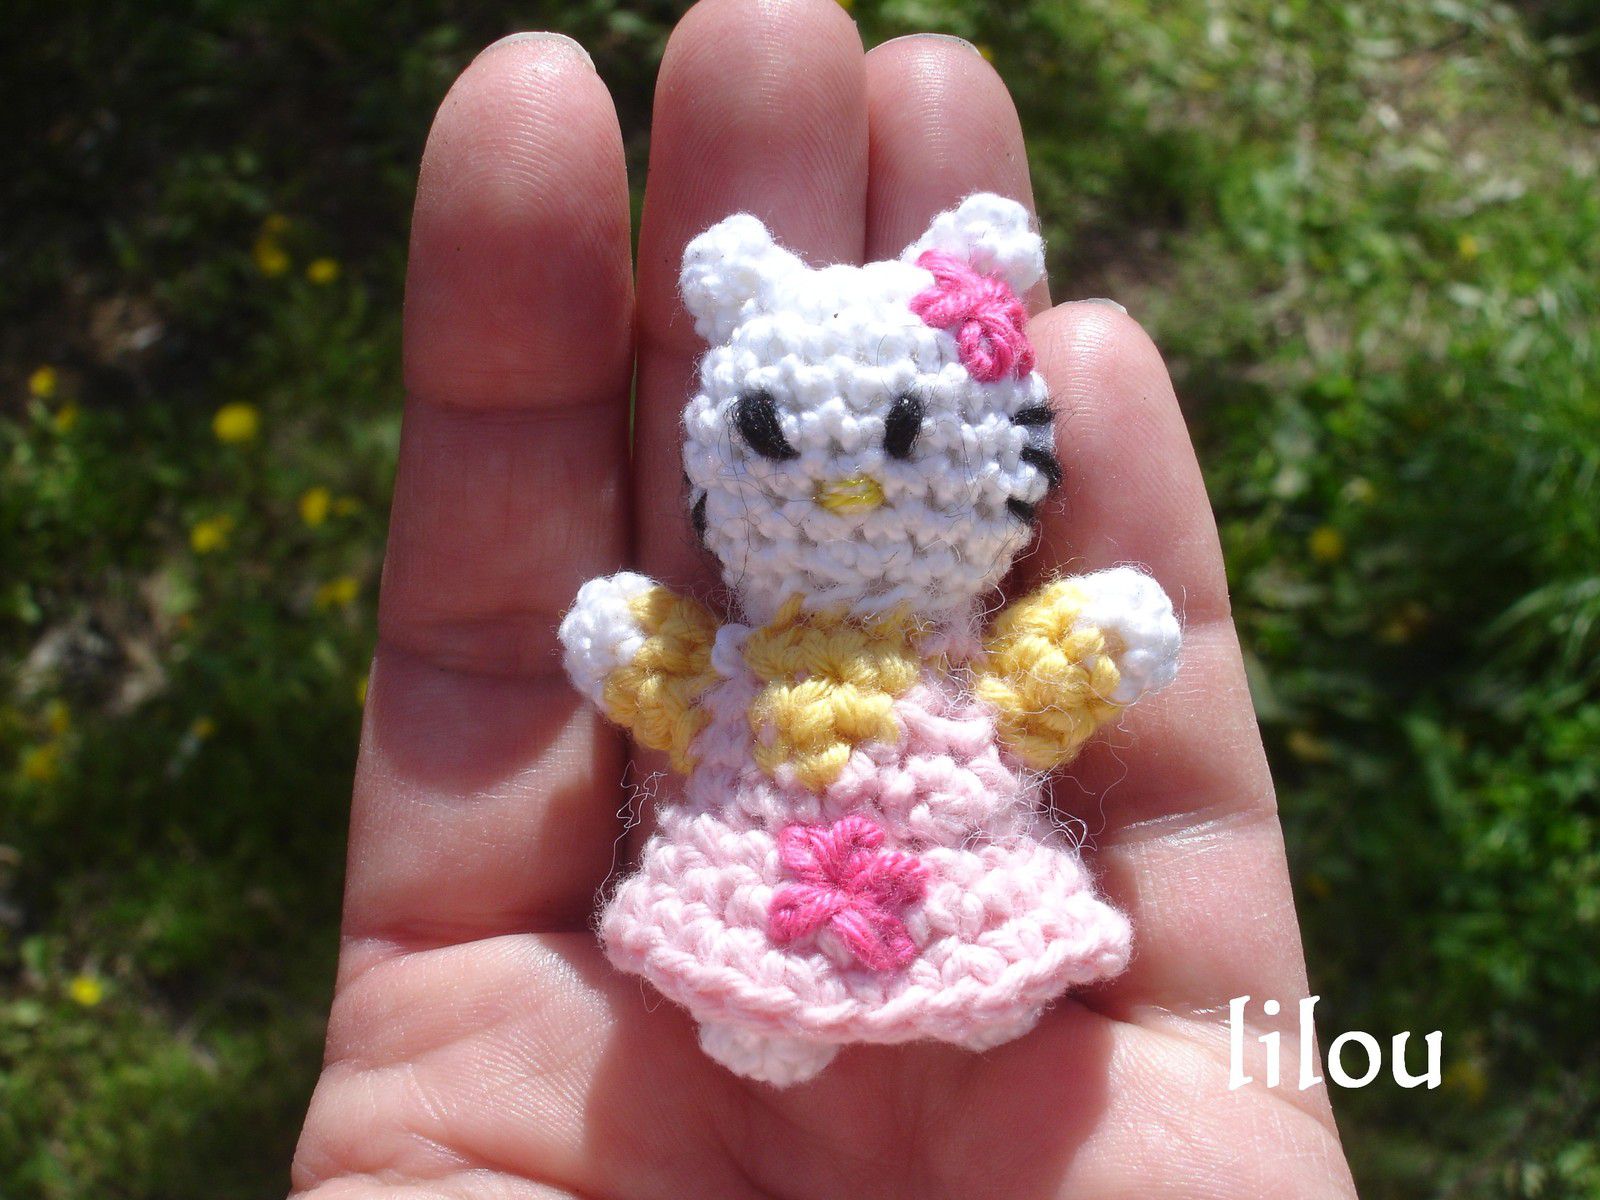 Hello Kitty porte clé - Fils de Lilou - tricot, crochet, dentelle, couture,  broderie, tuto modele gratuit